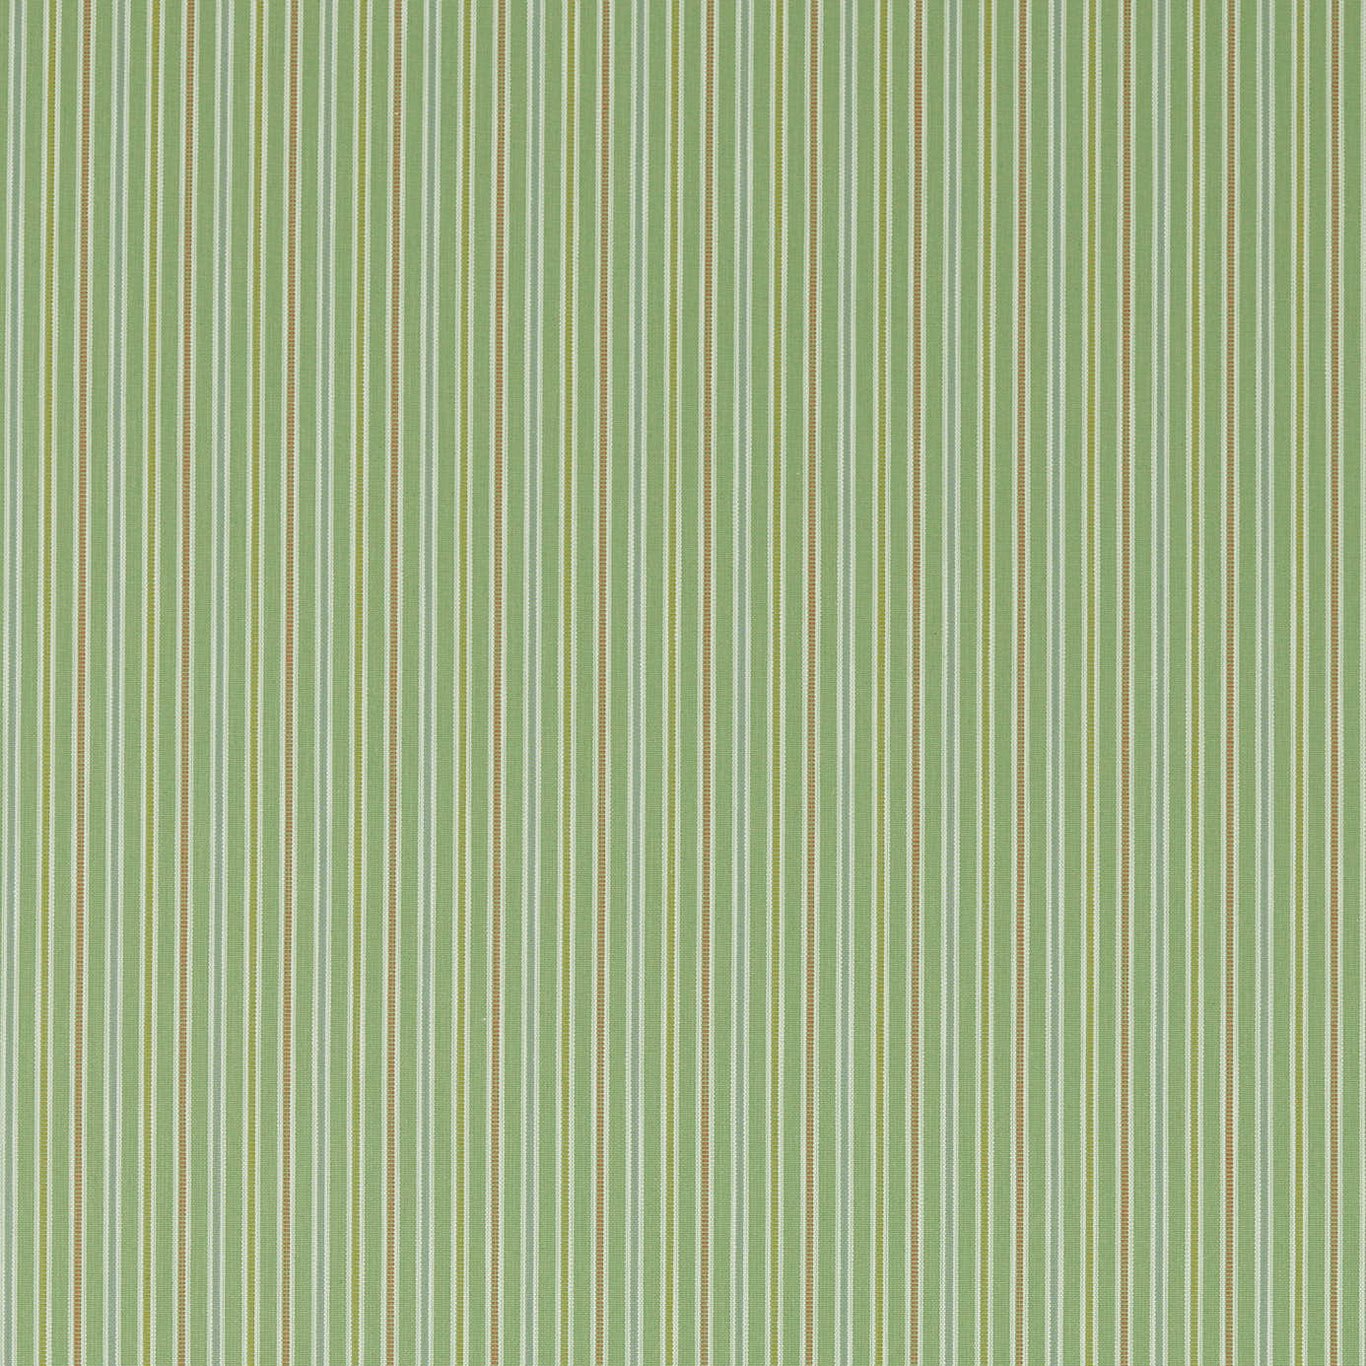 Melford Stripe Fern Fabric by SAN